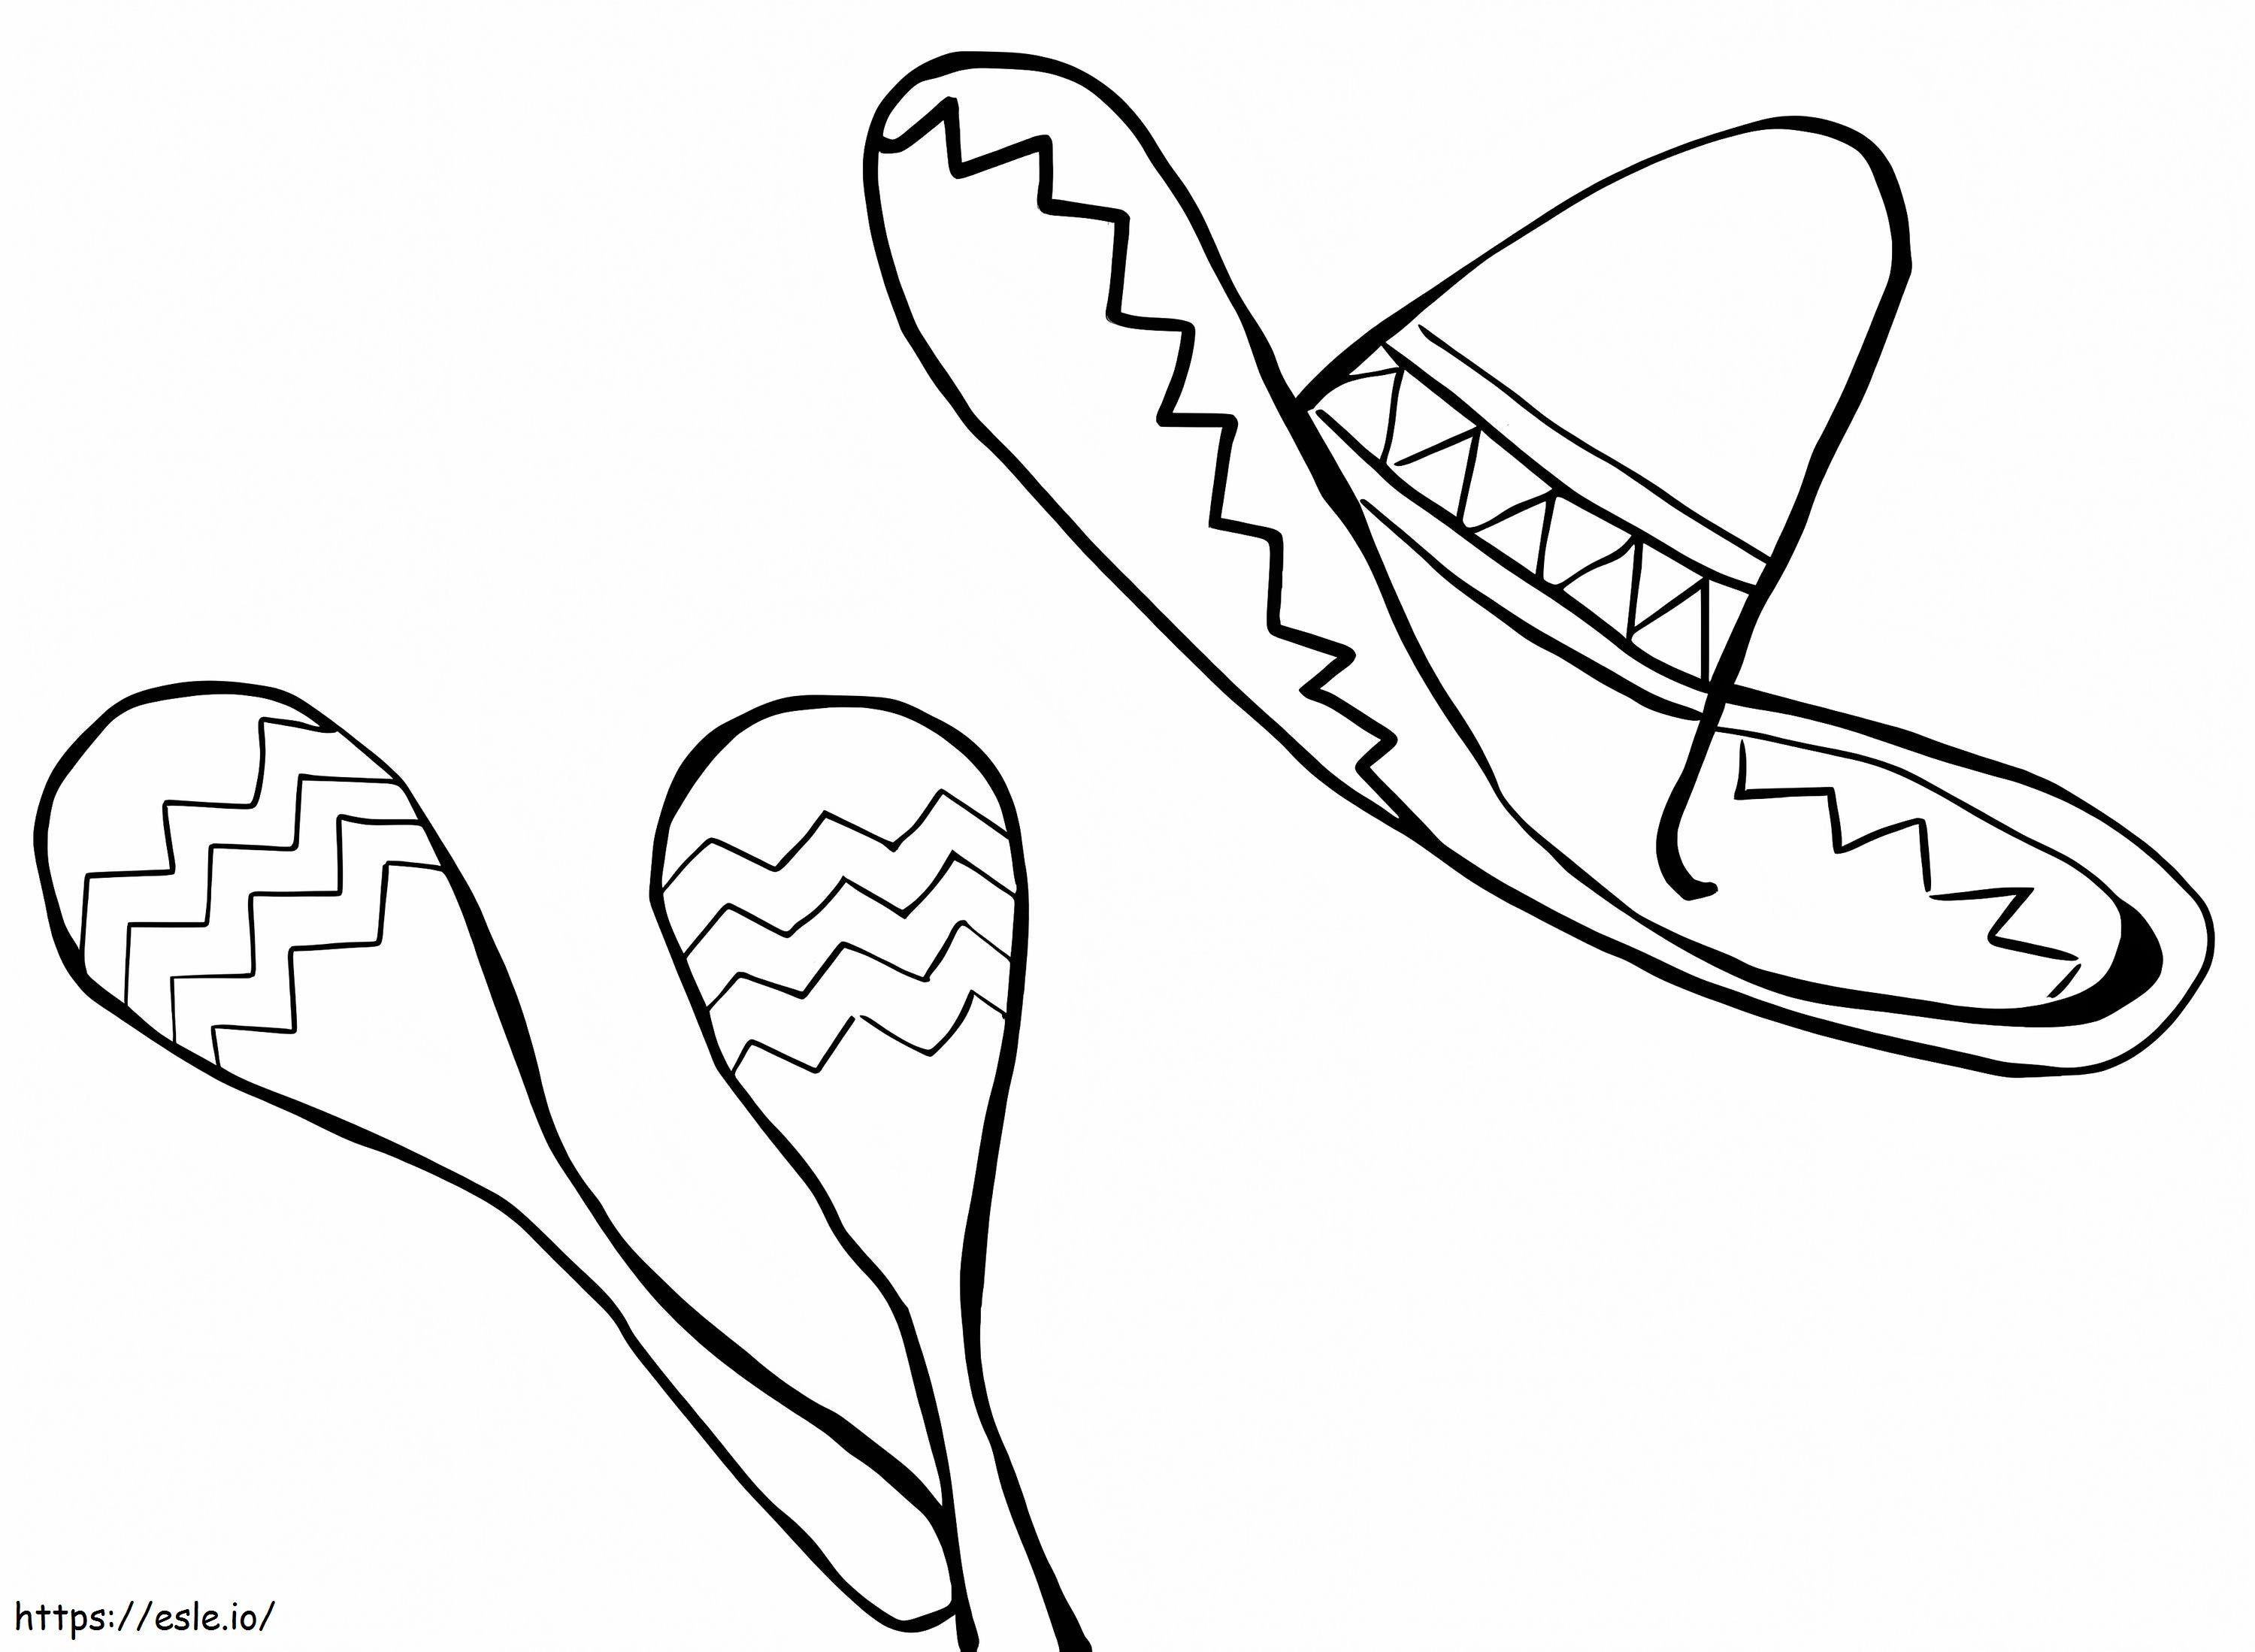 Maracas und mexikanischer Hut ausmalbilder